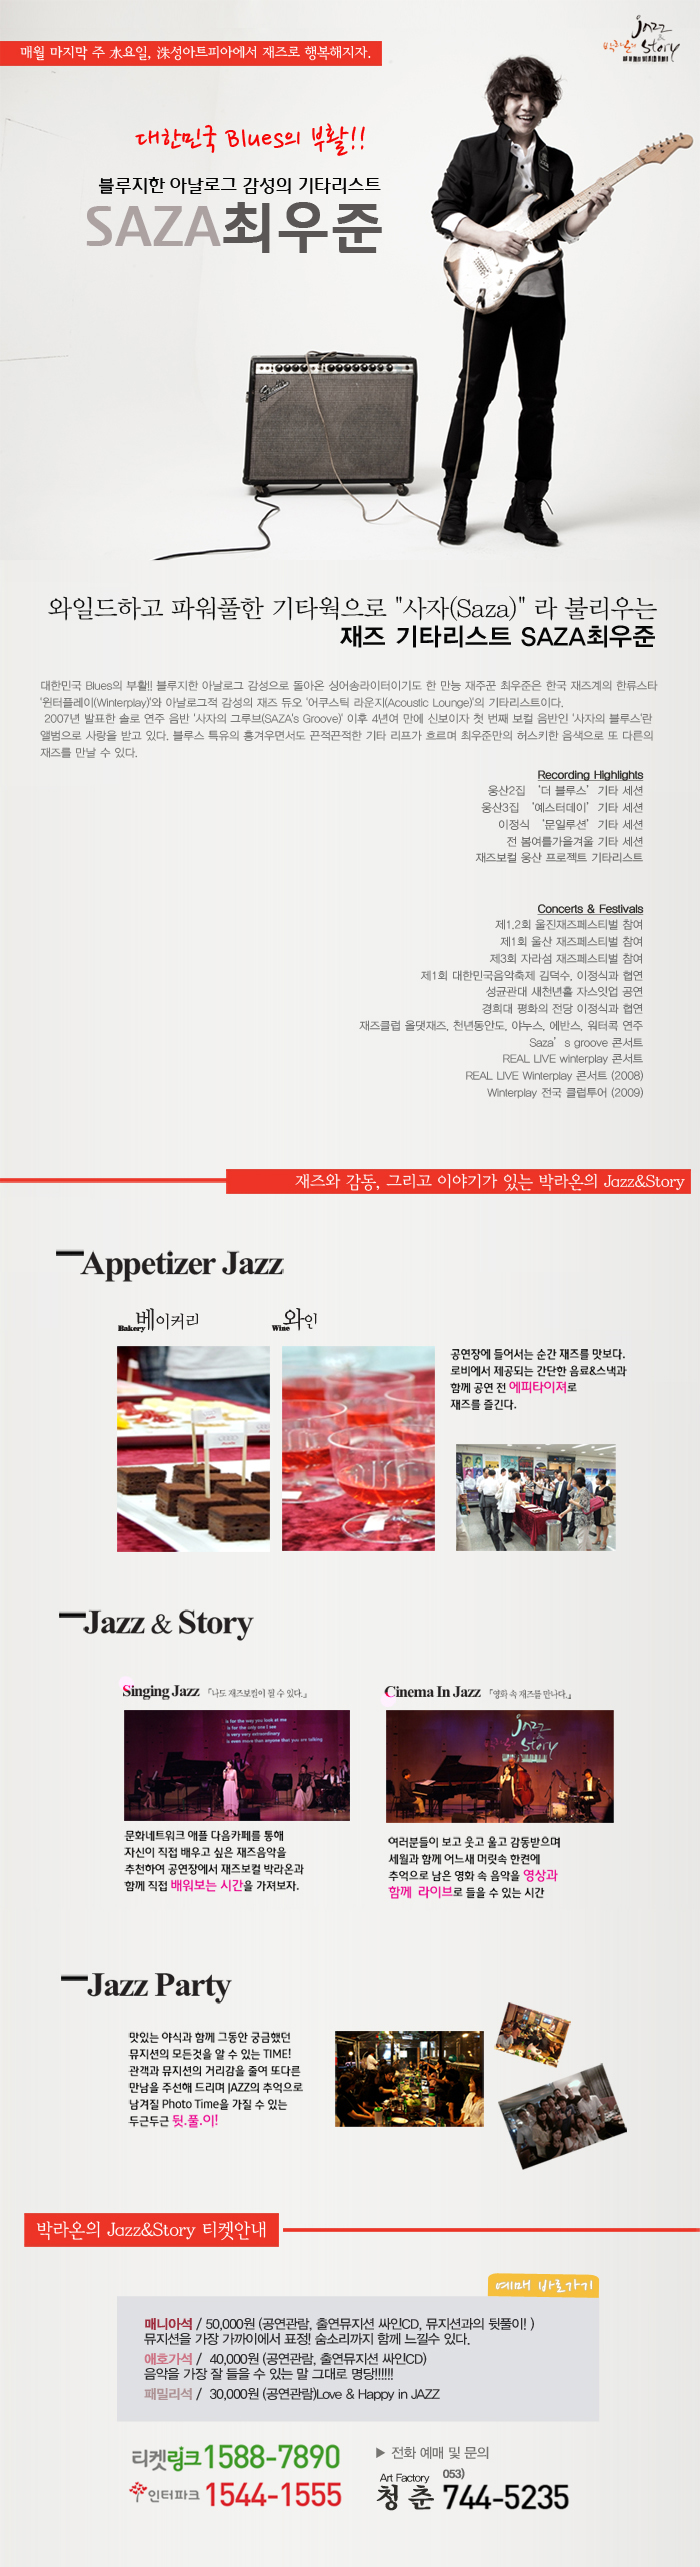 [3.28일 SAZA 최우준 콘서트]- 대한민국 Blues의 부활! 최. 우. 준. 그가 들려주는 재즈 이야기 -박라온의 Jazz & Story 이미지